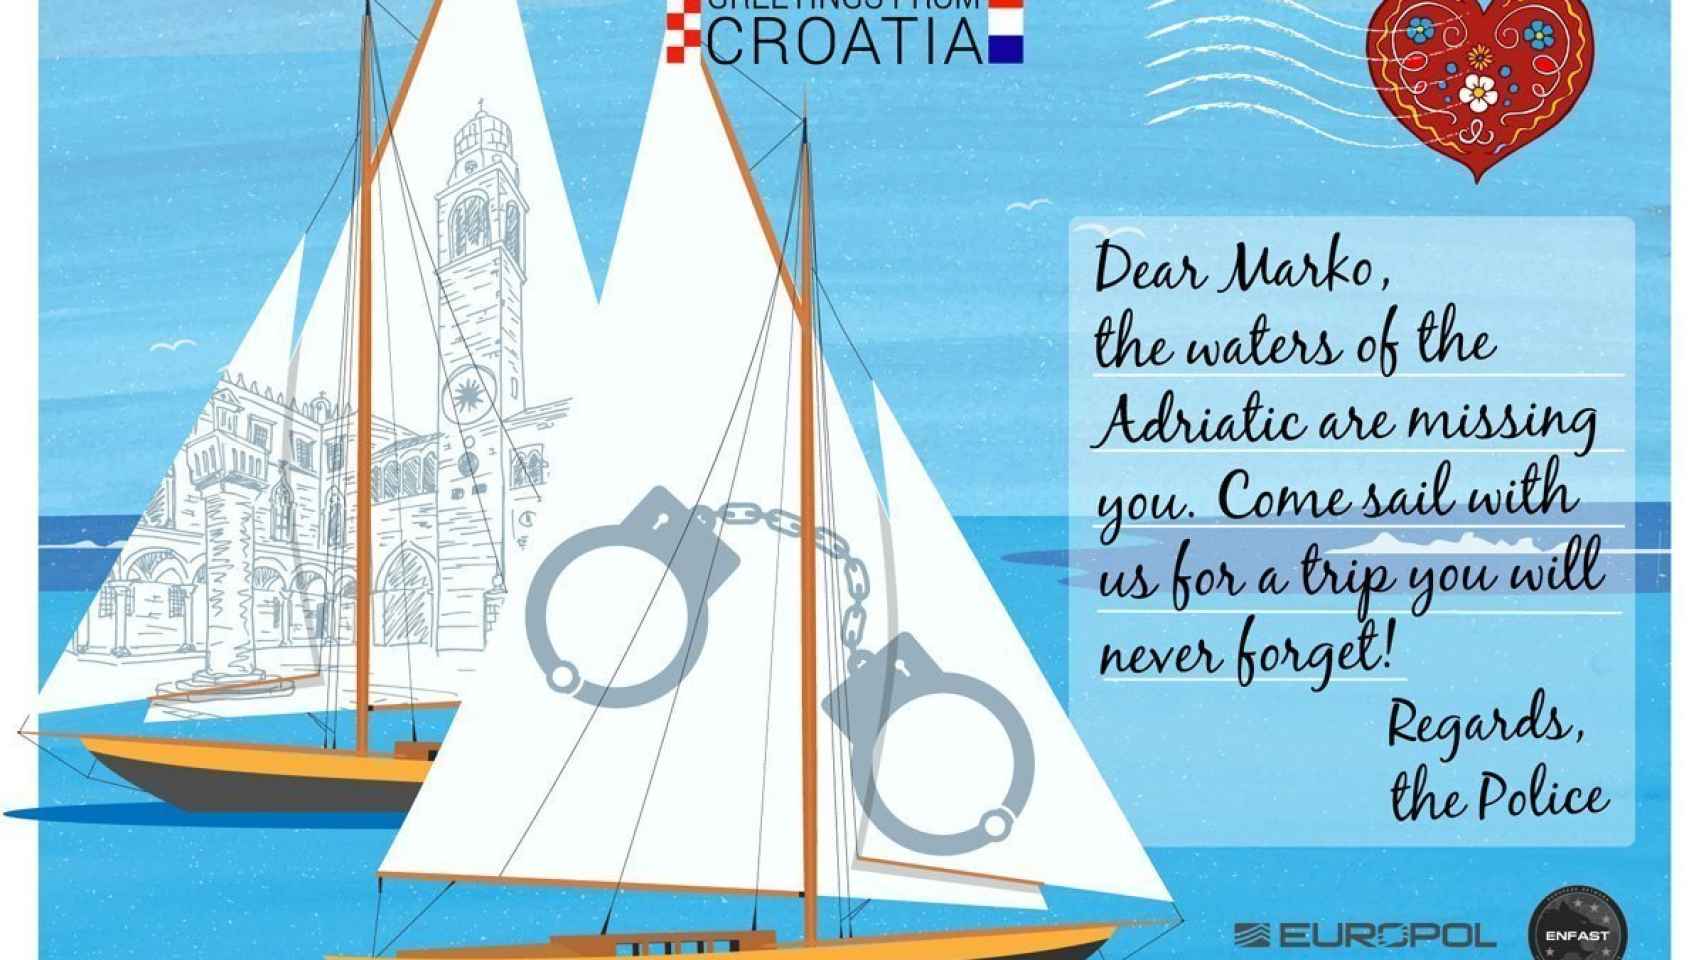 Una postal desde Croacia.